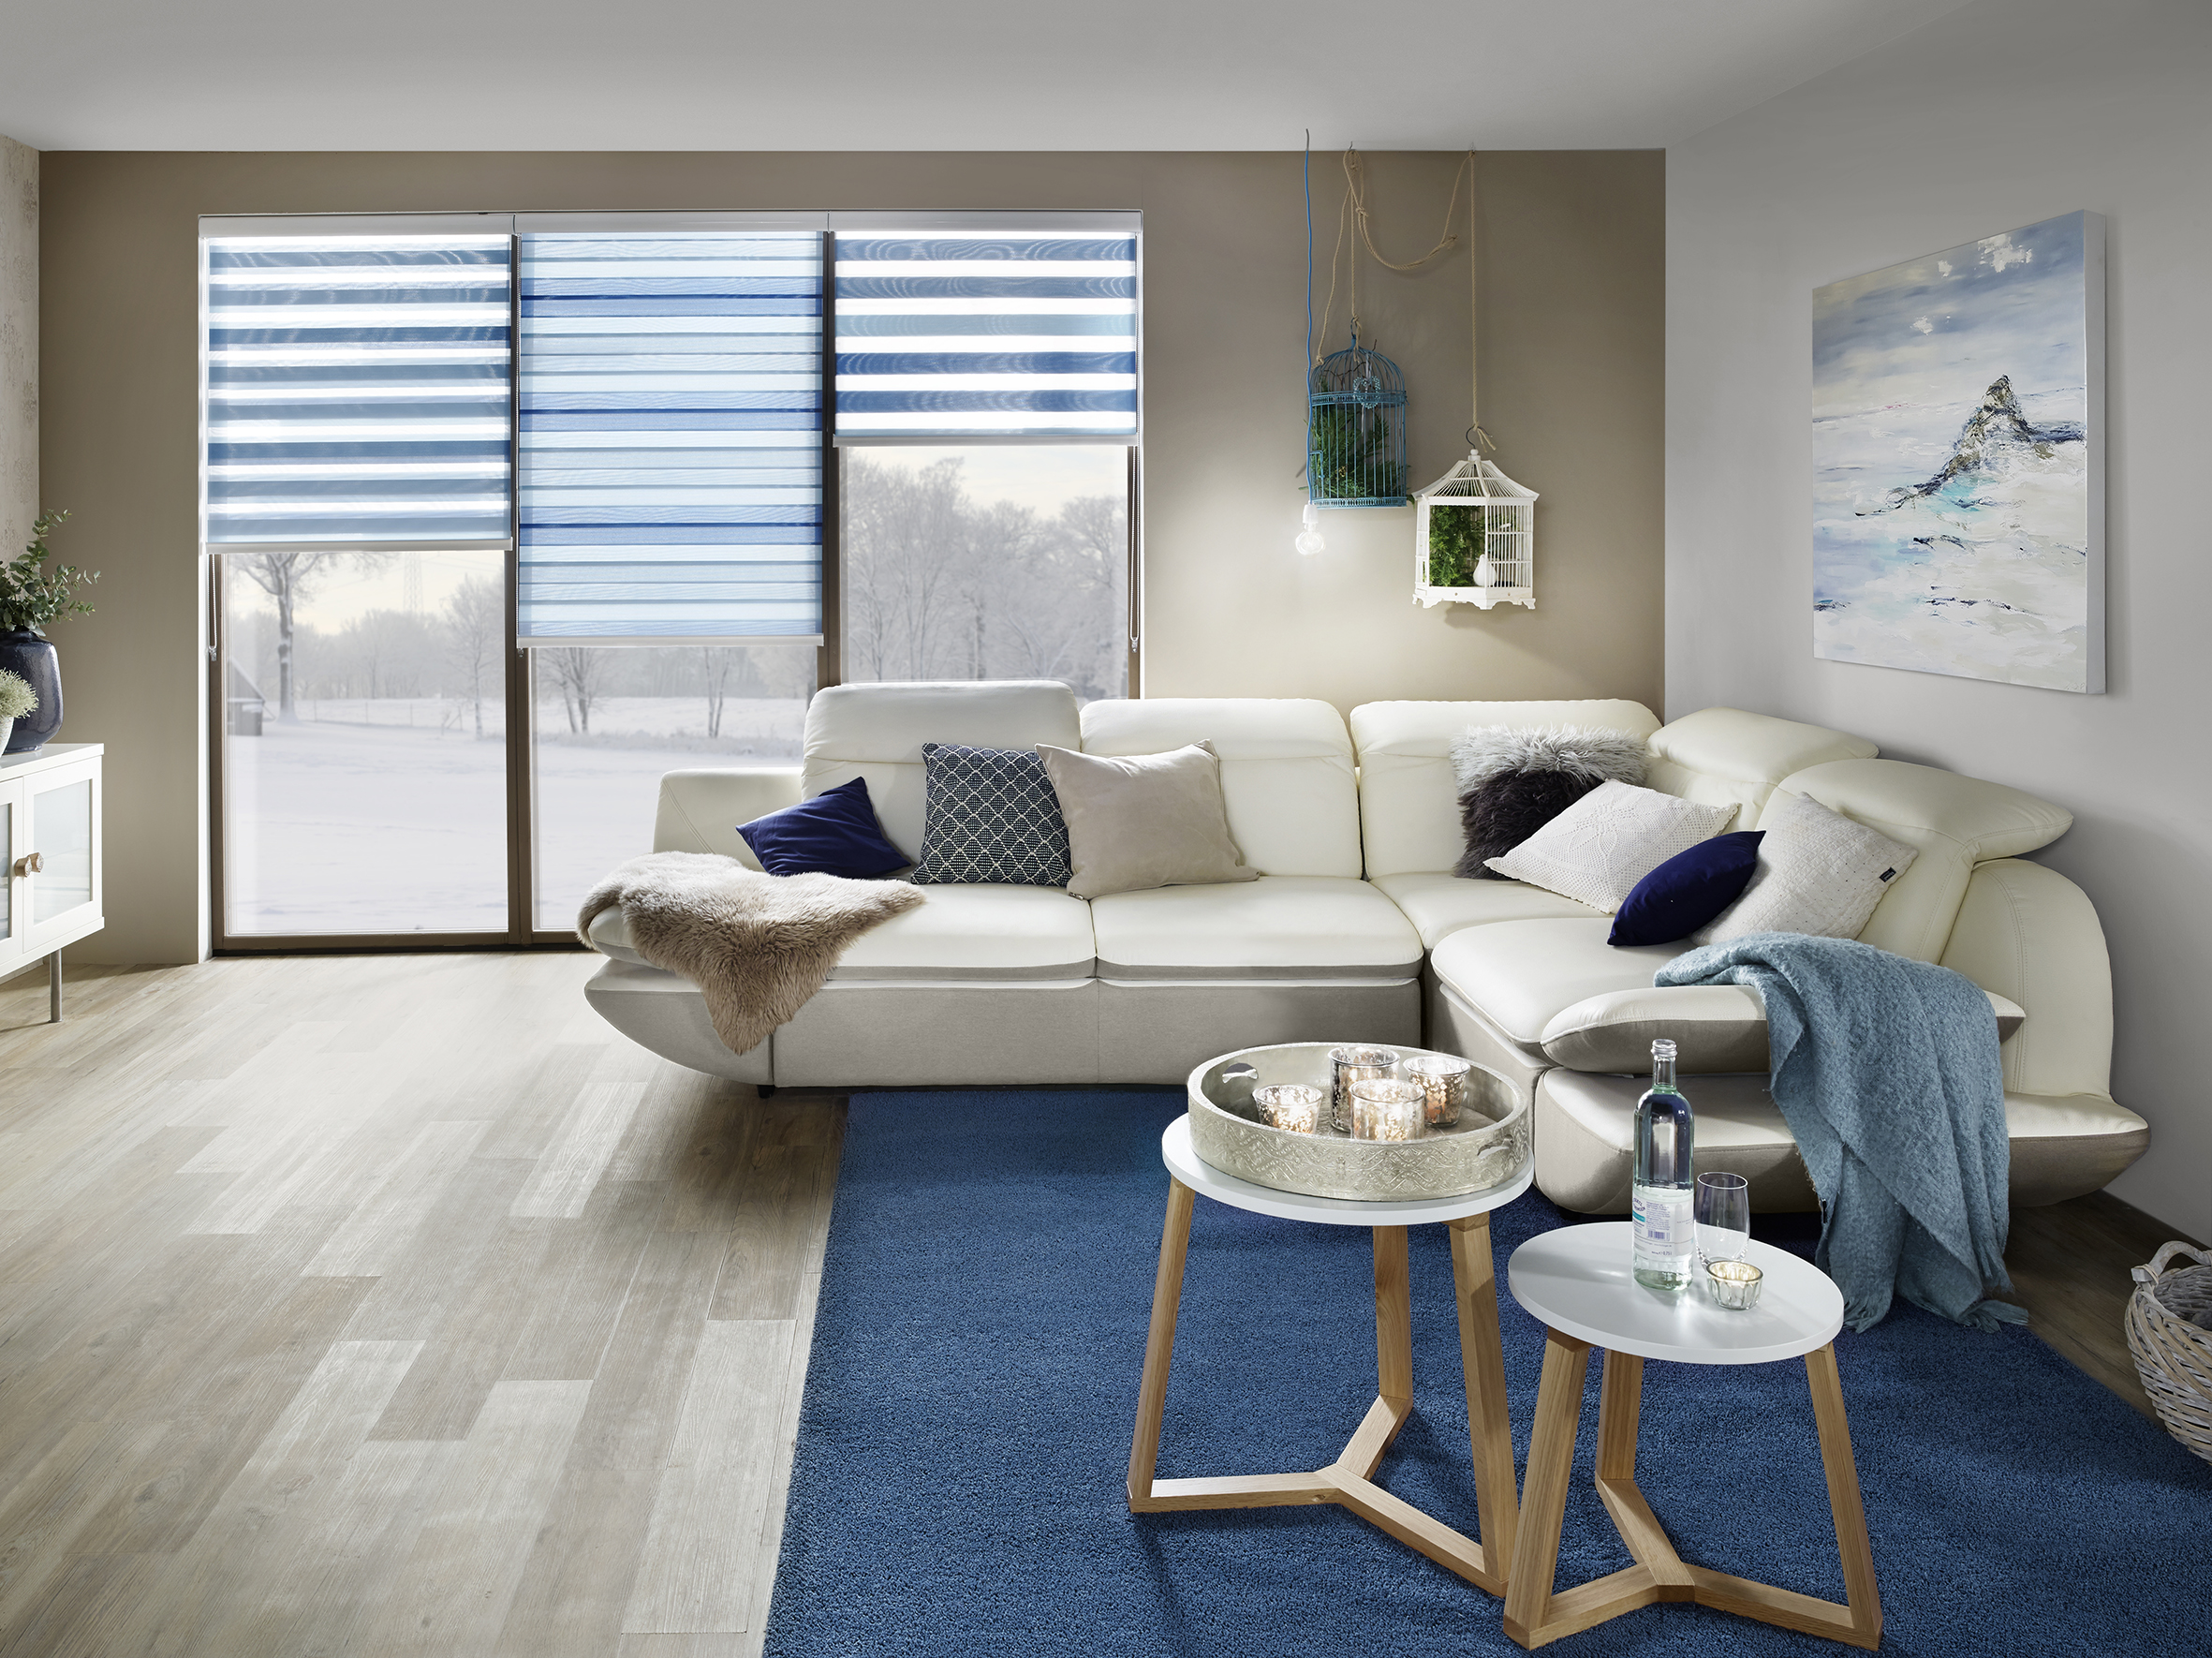 Weiß, blau gestreiftes Sonnenschutzrollo zum Sichtschutz im passenden Wohnzimmer. - Schmidt Insektenschutzrahmen GmbH